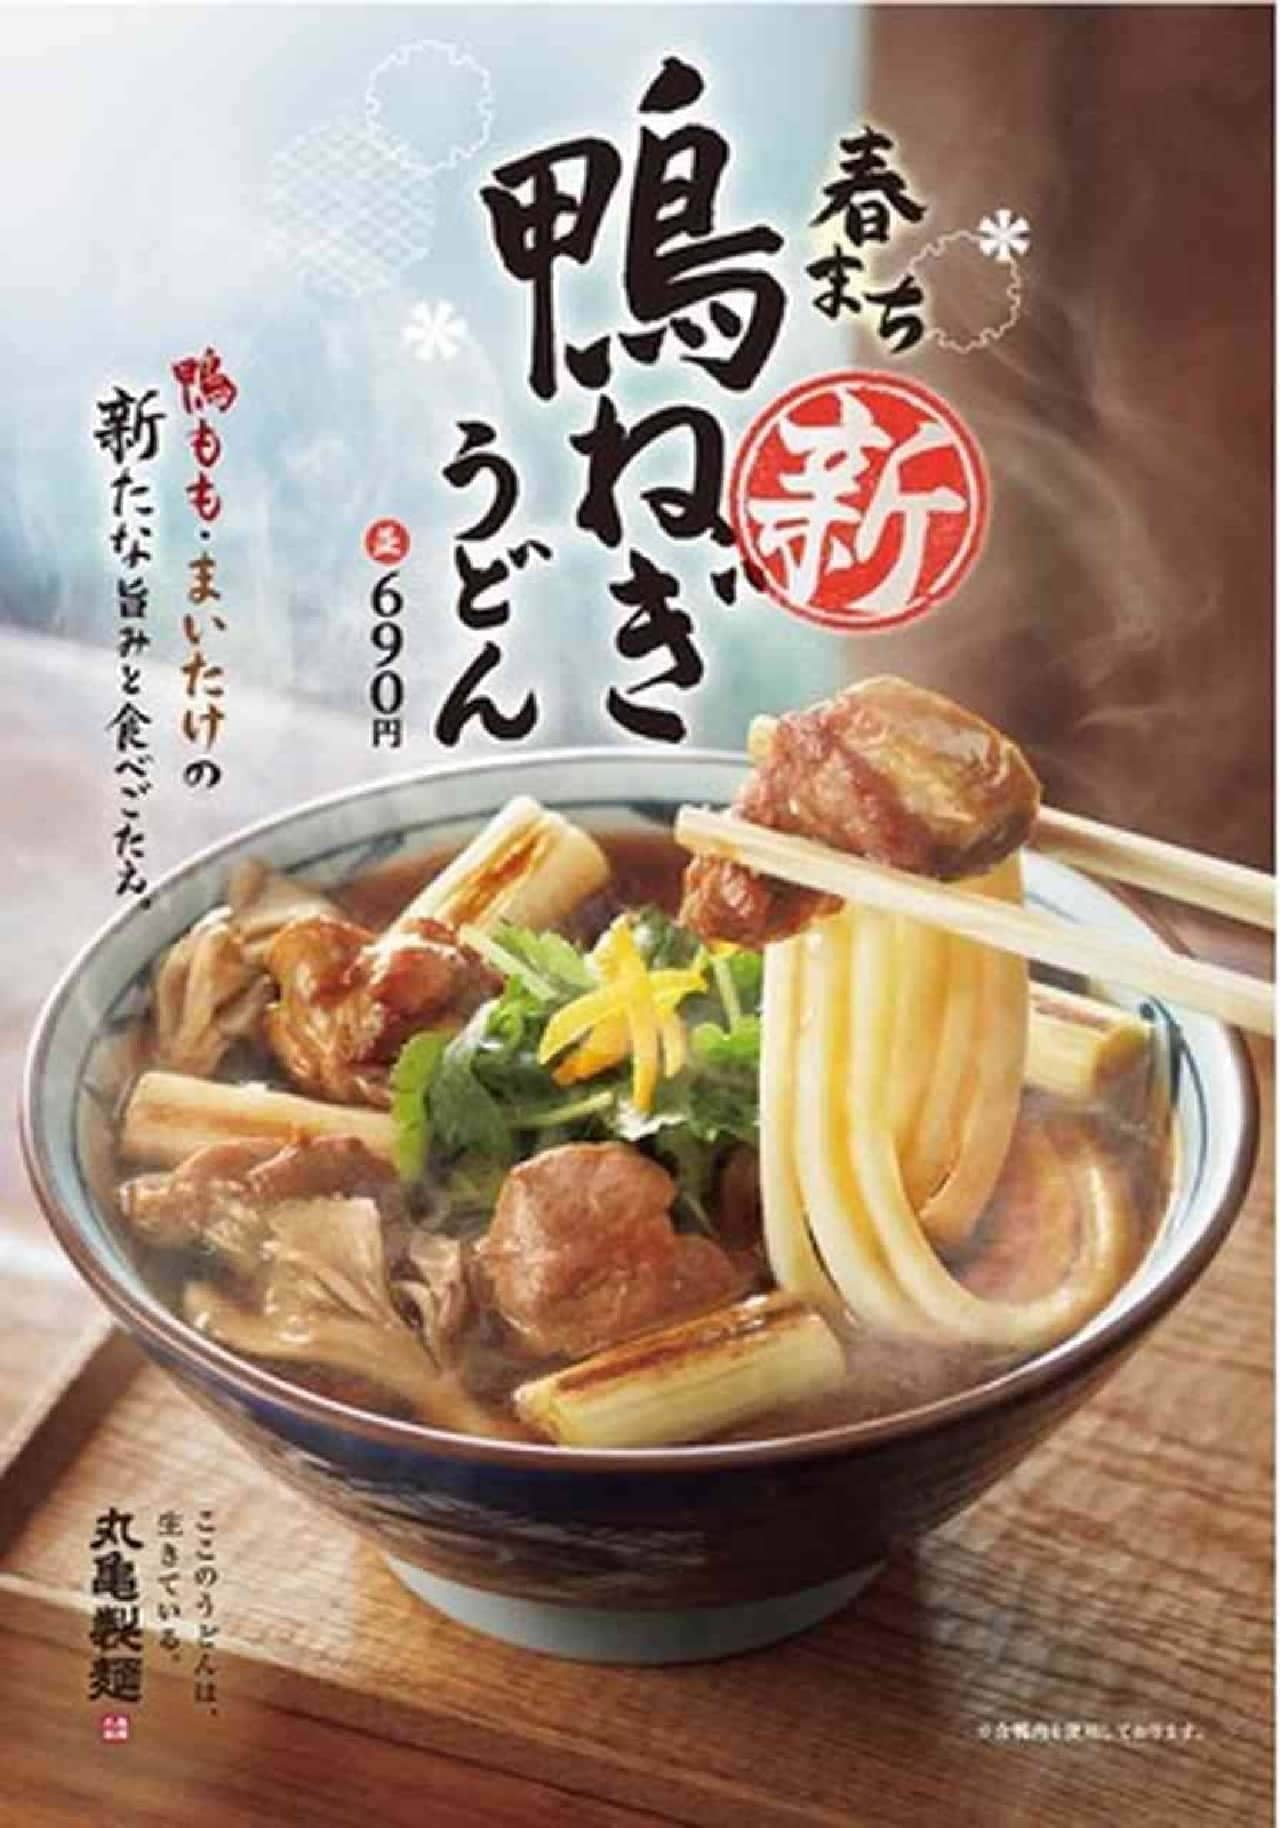 丸亀製麺「新 鴨ねぎうどん」